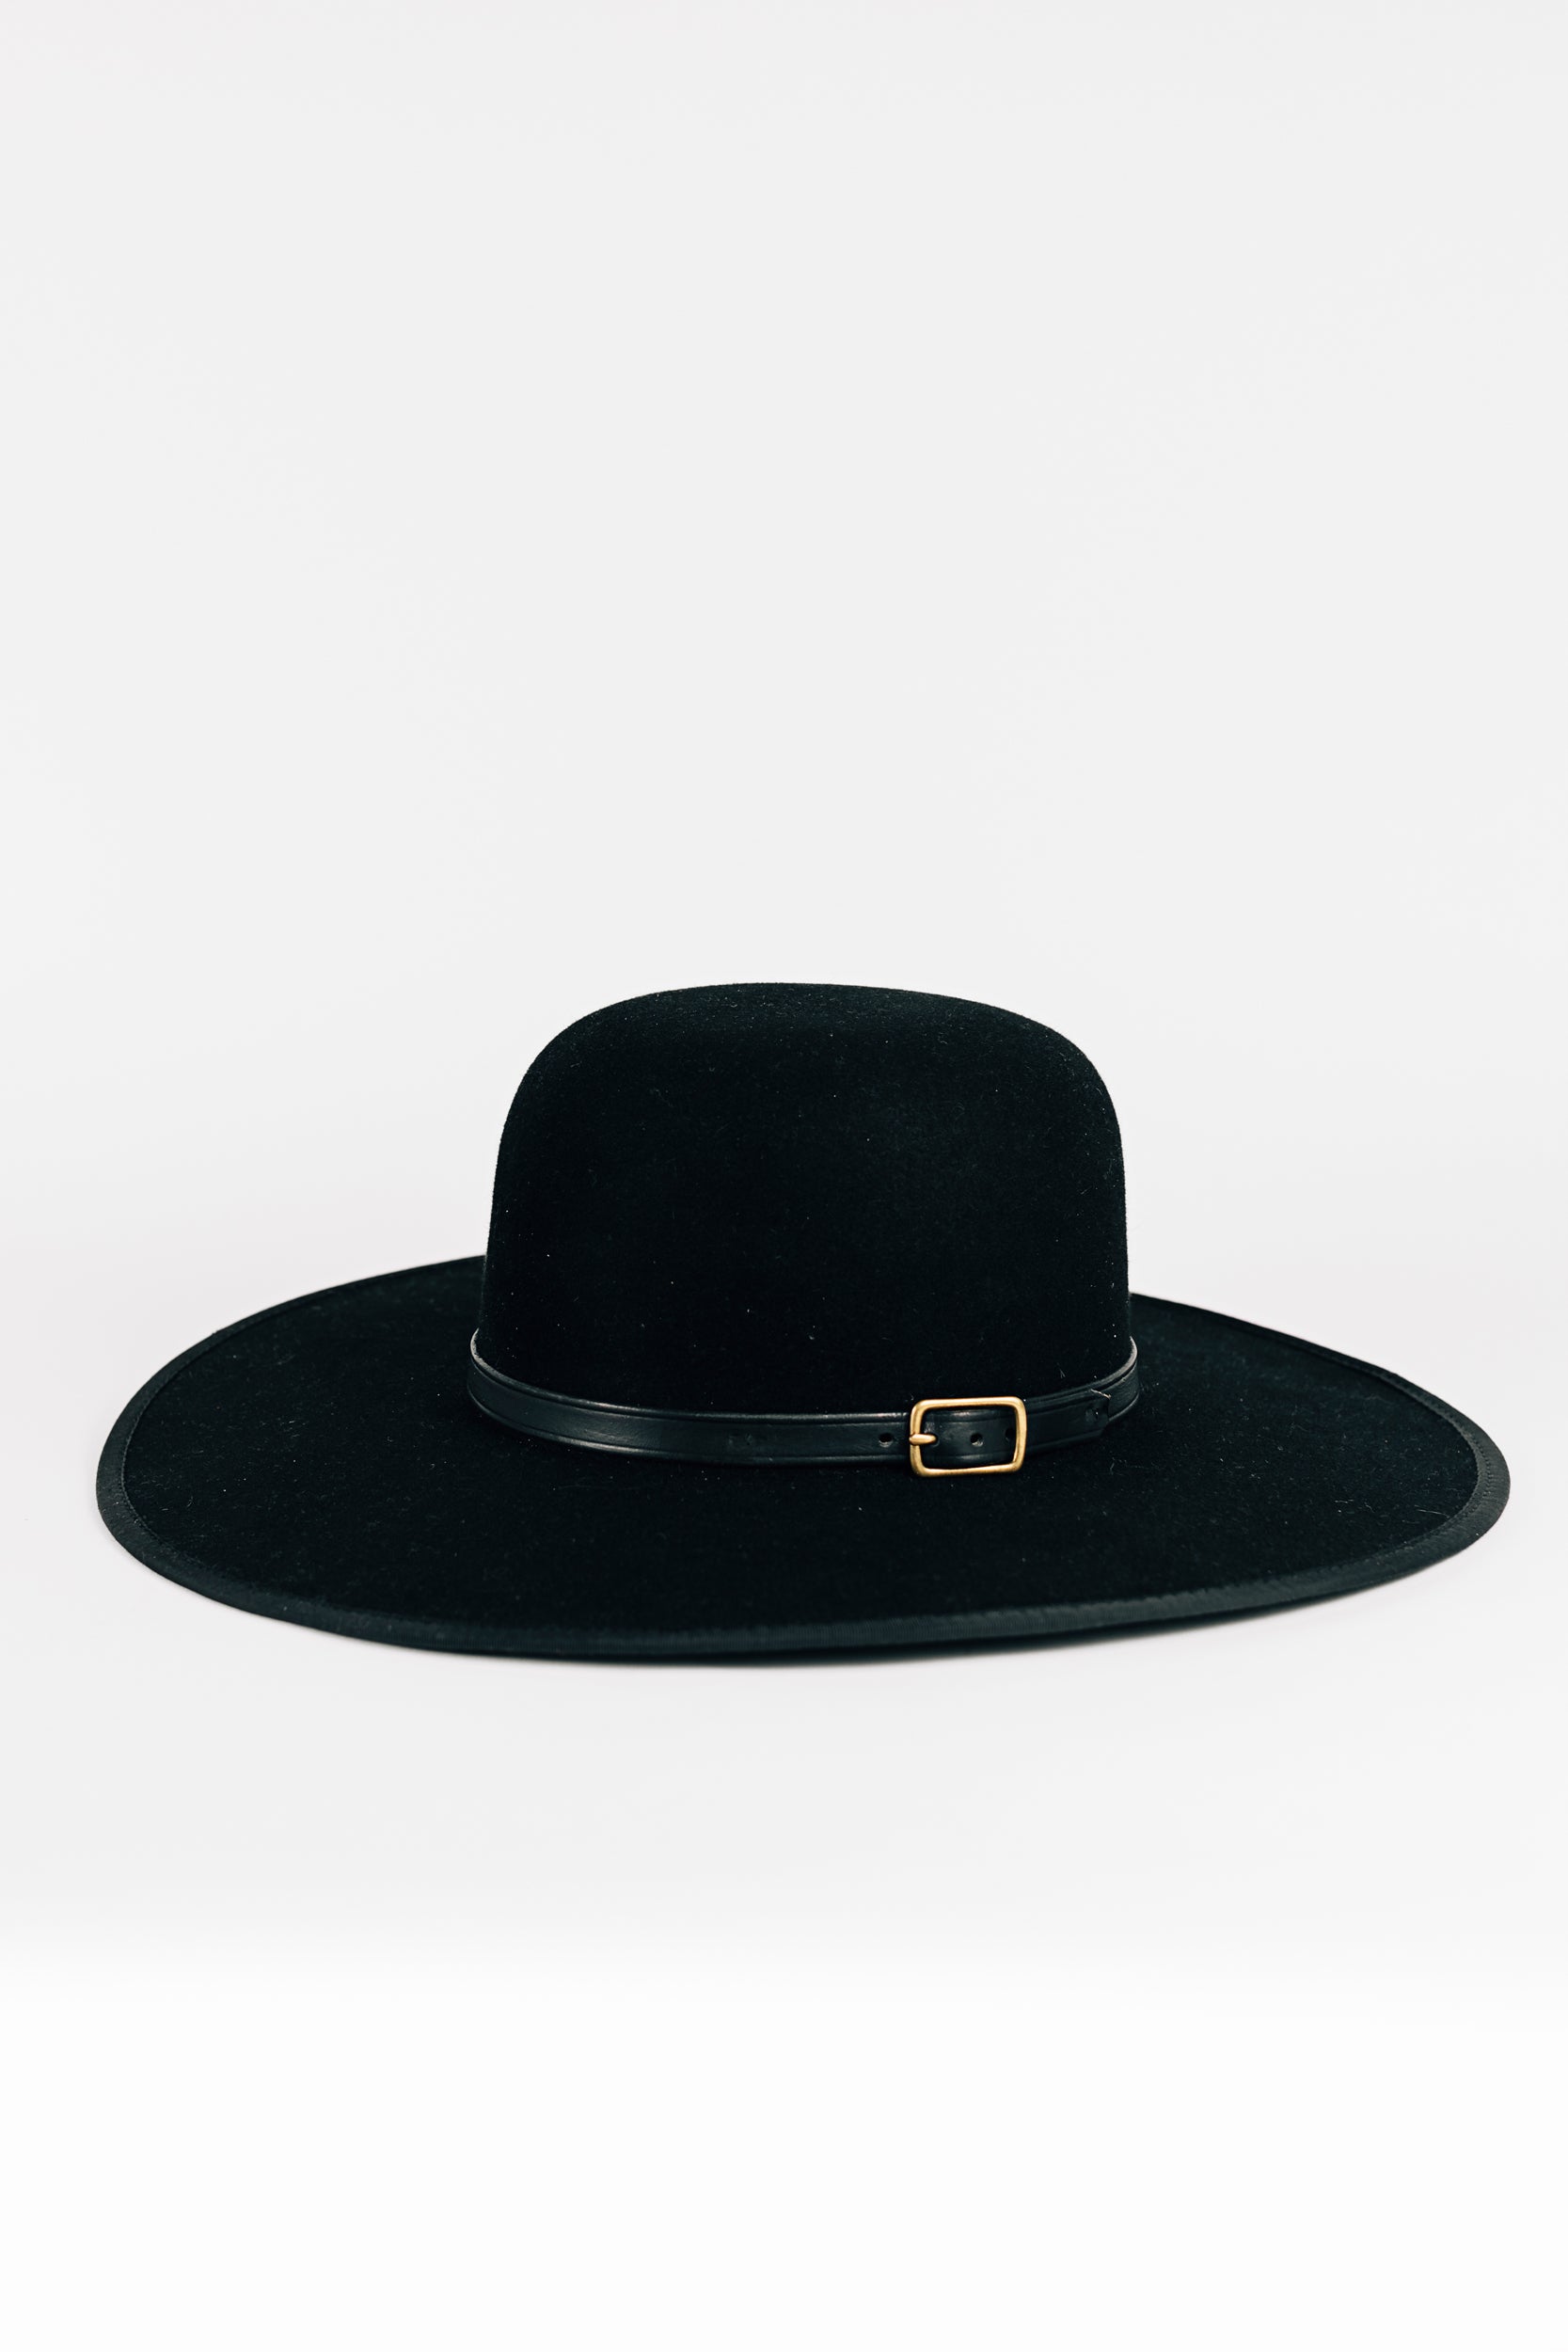 The Wide Rimmed Black Saddle Hat